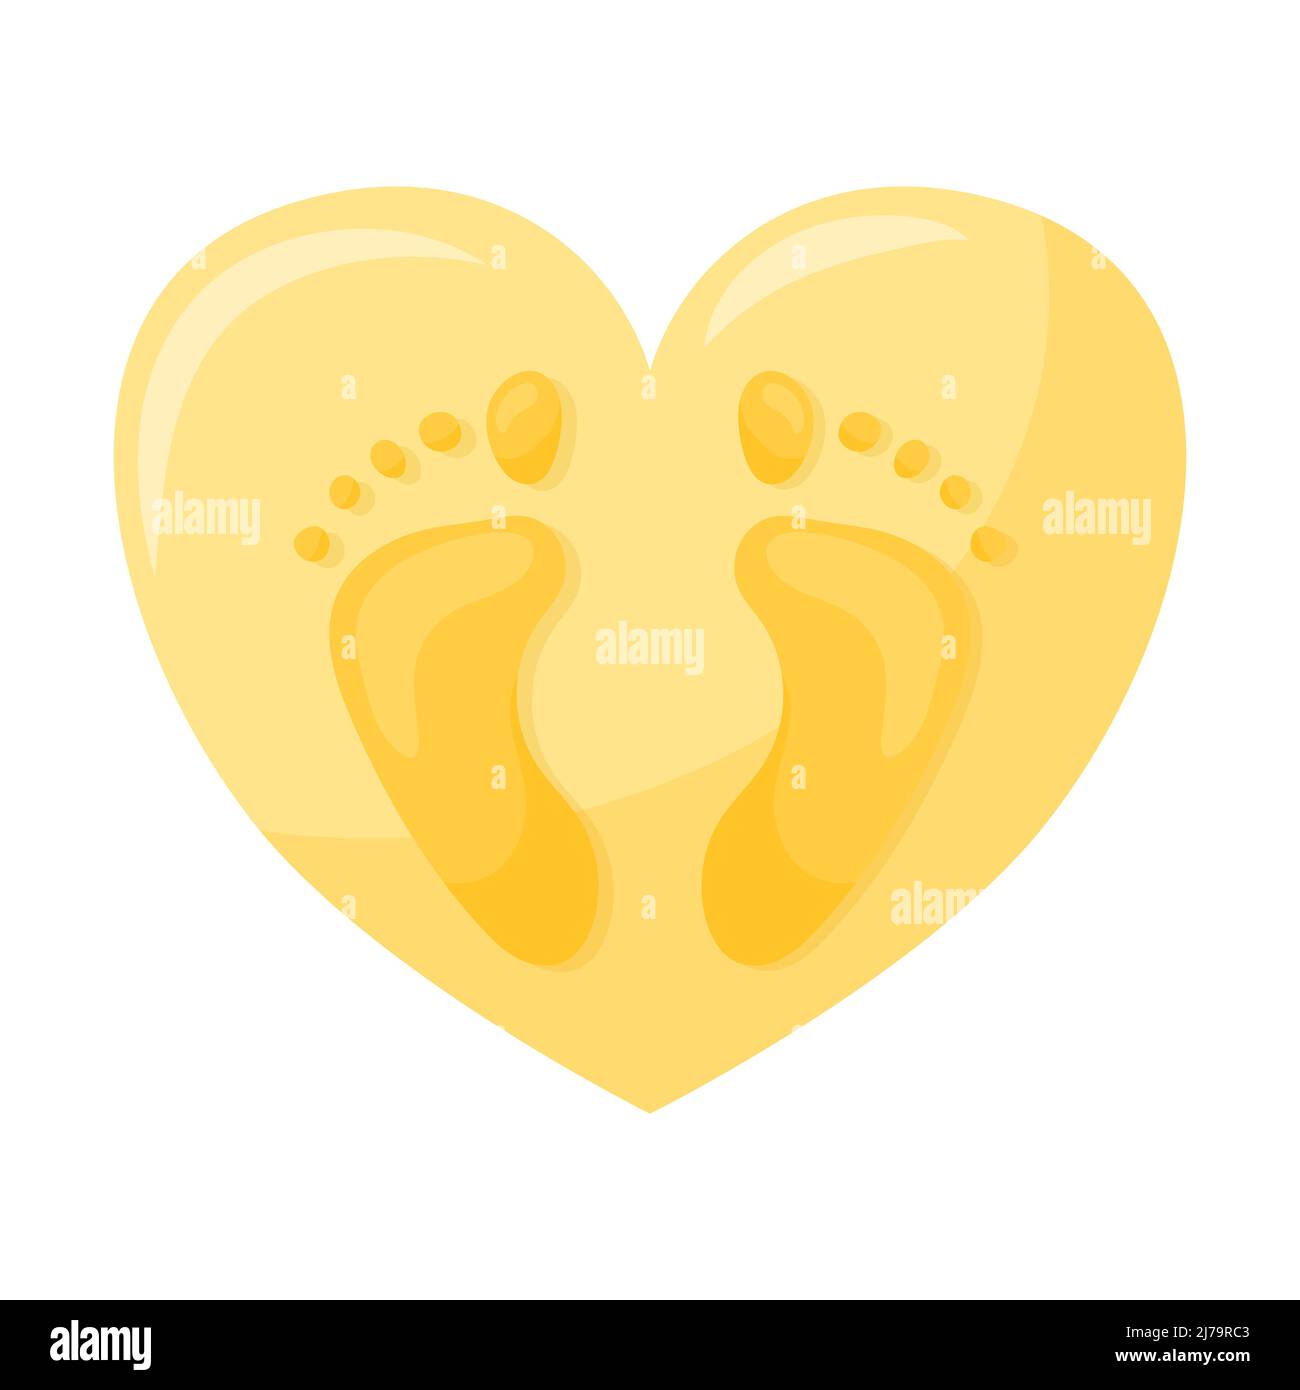 Empreintes des pieds humains avec les doigts. Empreintes abstraites en forme de coeur. Illustration vectorielle dans un style de dessin animé plat isolé sur une bande blanche Illustration de Vecteur